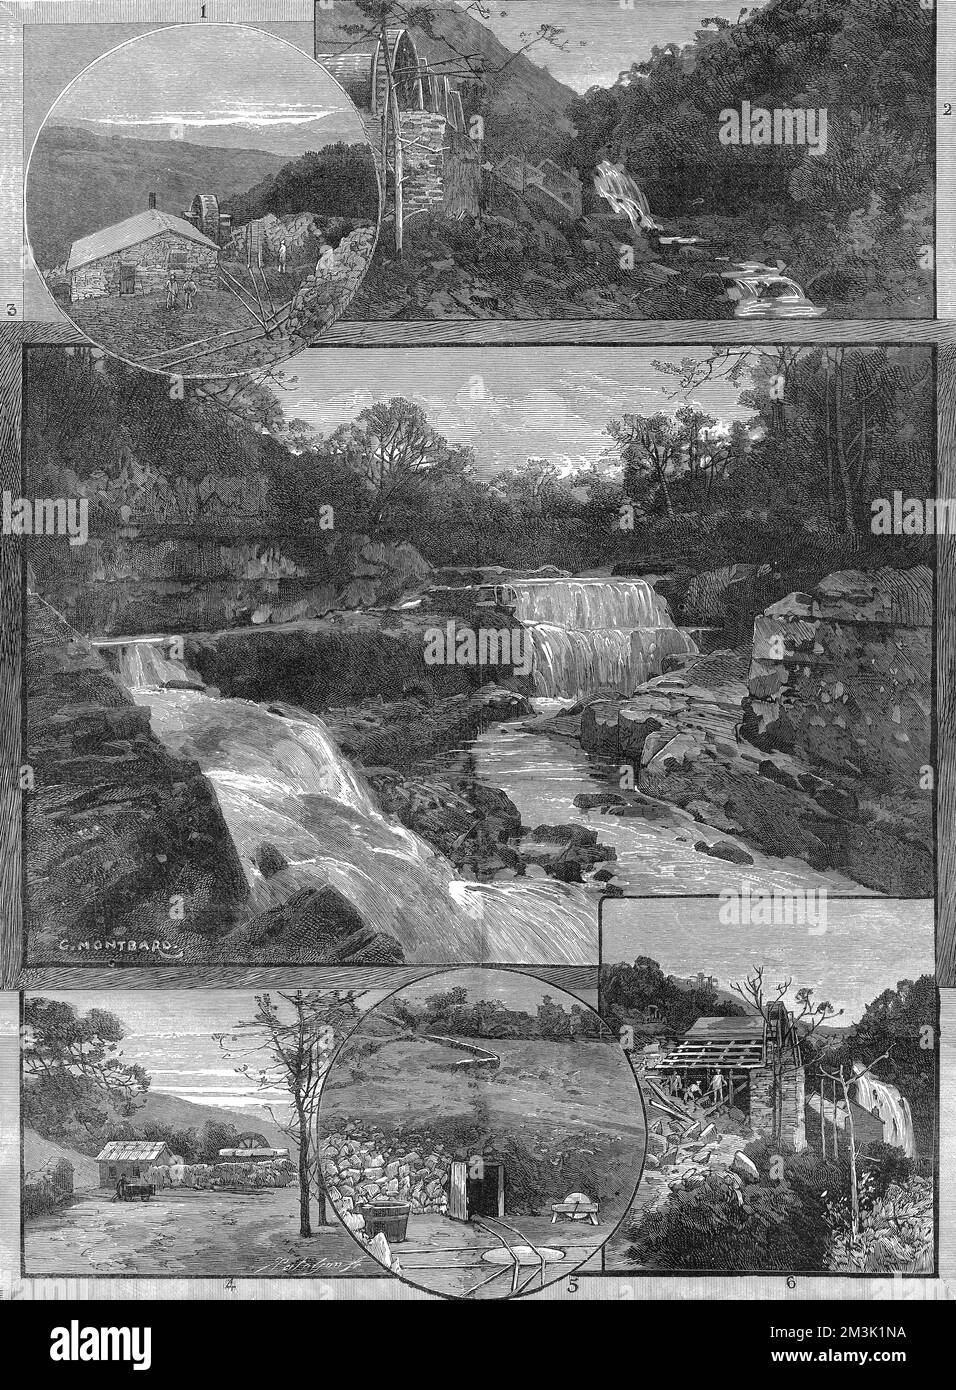 Série de scènes liées à l'exploitation aurifère à Gwynfynnydd, au nord du pays de Galles. L'image centrale montre les chutes supérieures de Pistyl y Caen et les images environnantes montrent les bâtiments de la mine. 1887 Banque D'Images